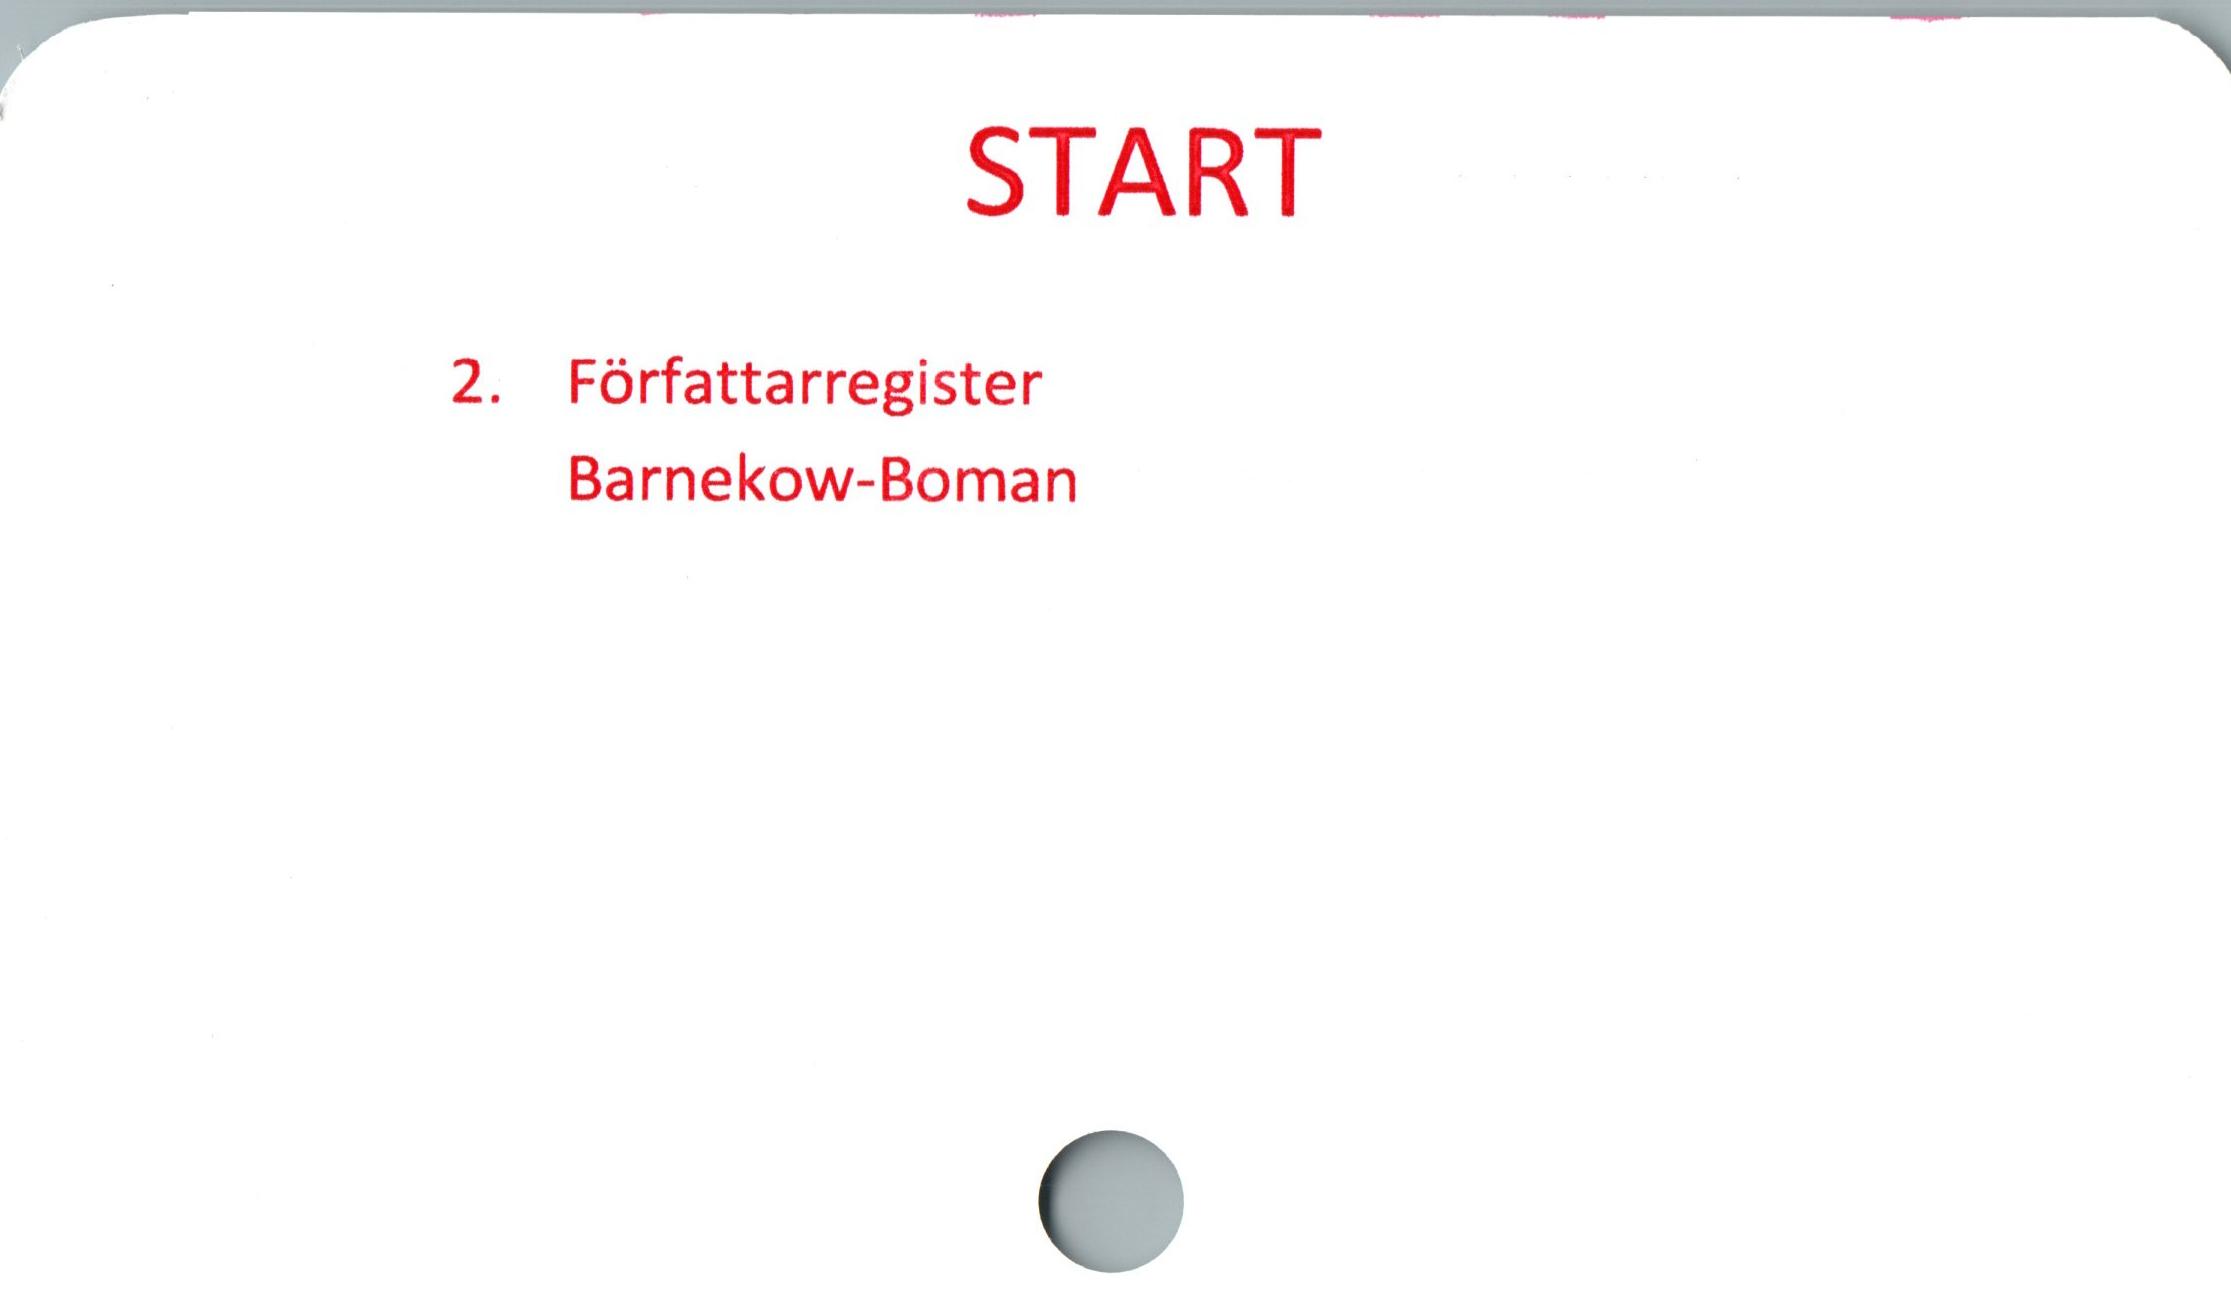  ﻿START

2. Författarregister
Barnekow-Boman